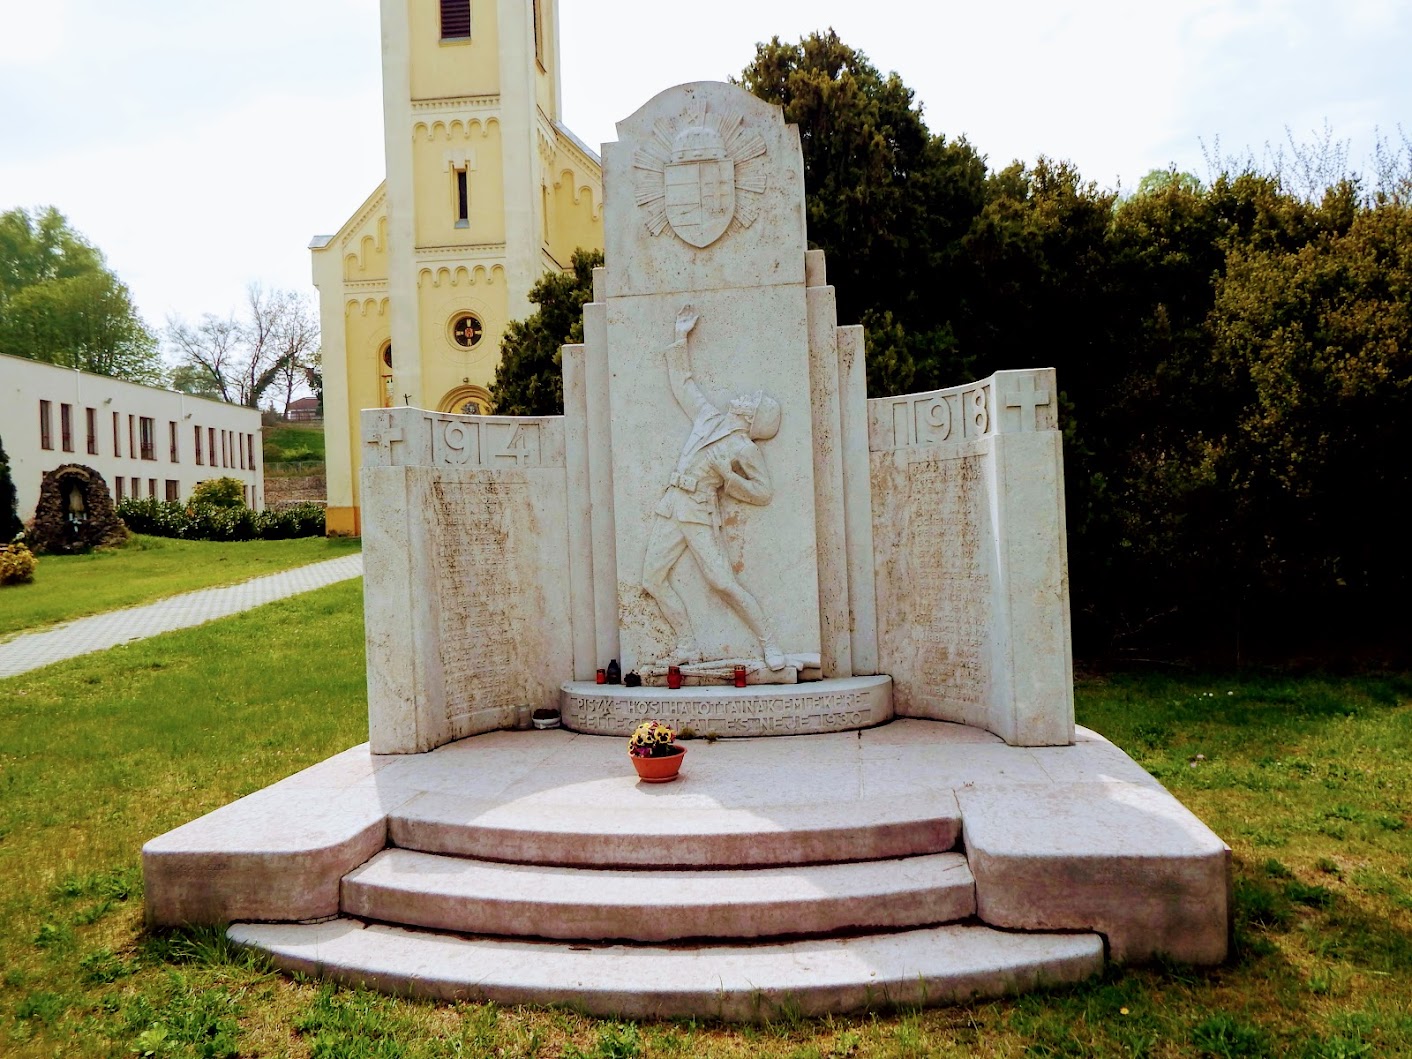 Lábatlan - I. világháborús emlékmű a piszkei templomkertben